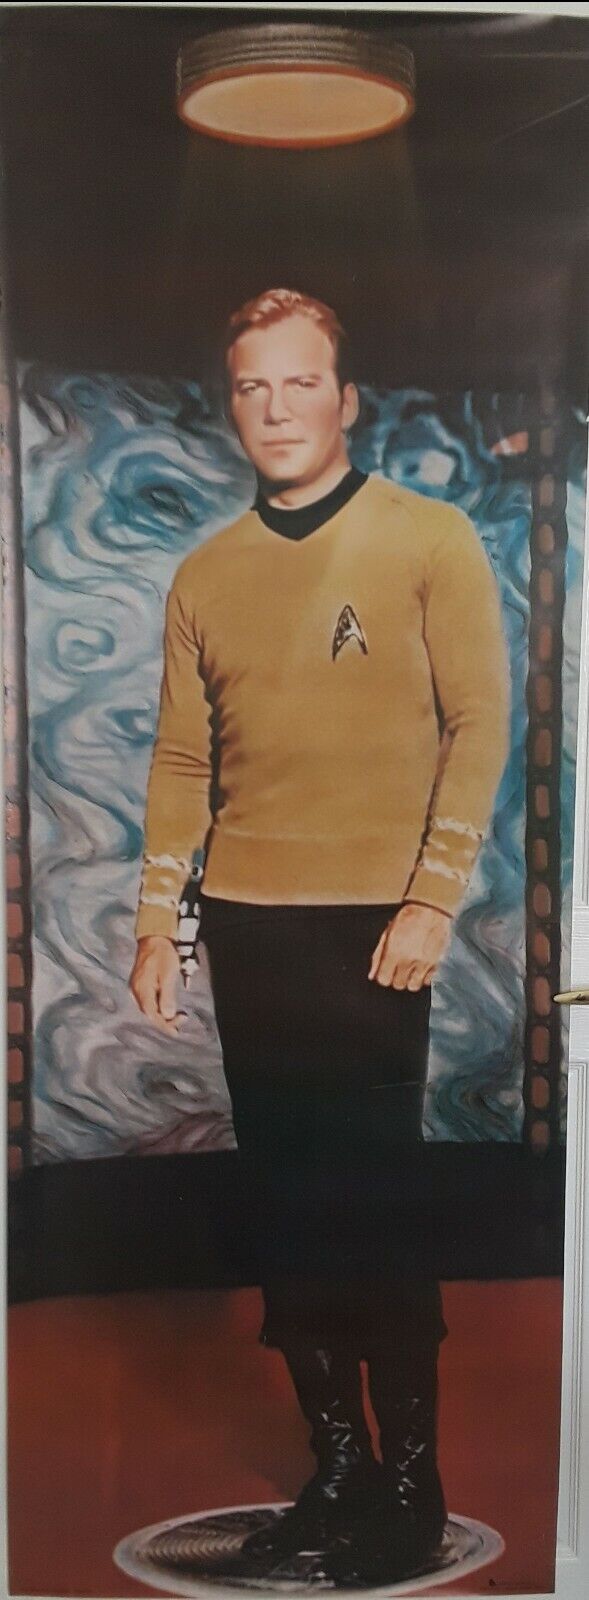 Star Trek, Vintage 1976 6' Kirk Poster, Door Size. |RARE|